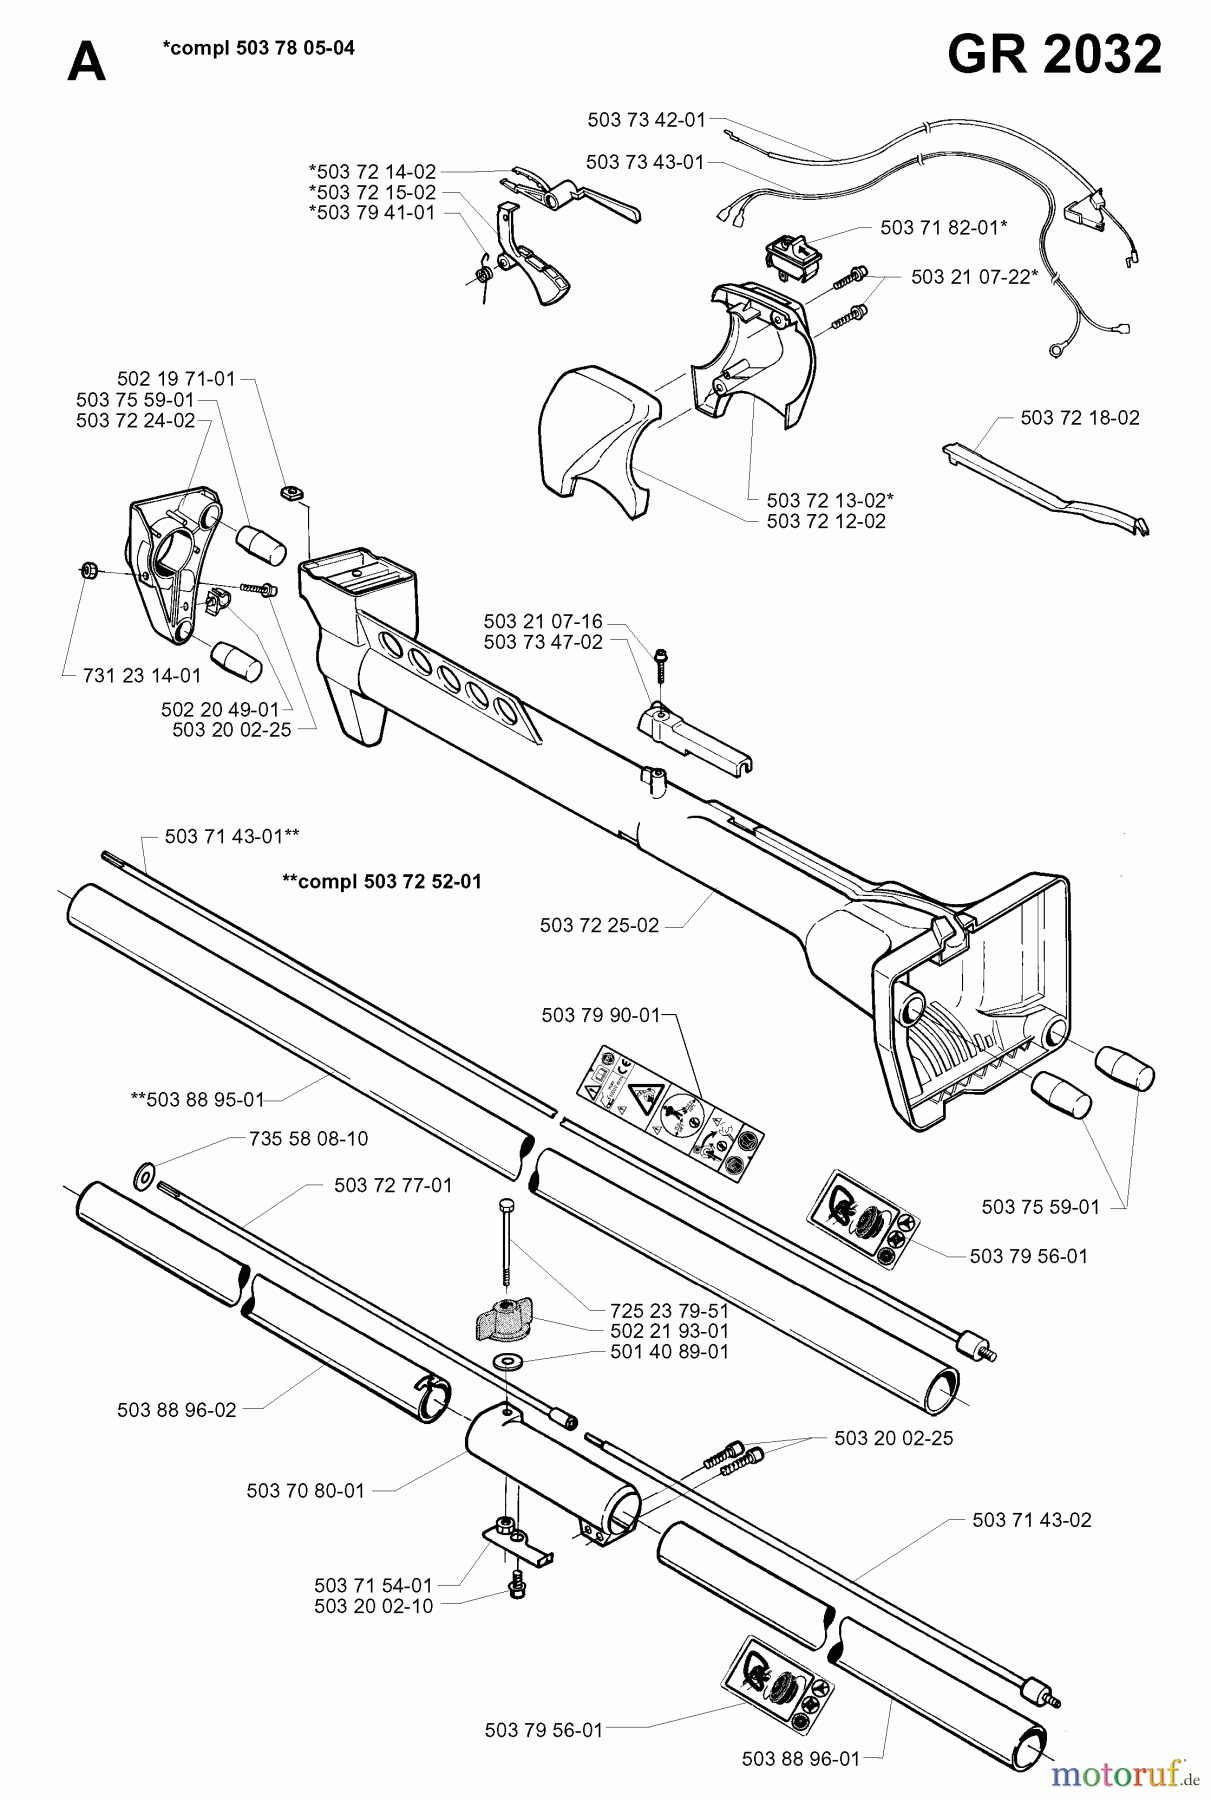  Jonsered Motorsensen, Trimmer GR2036 - Jonsered String/Brush Trimmer (1998-02) SHAFT HANDLE